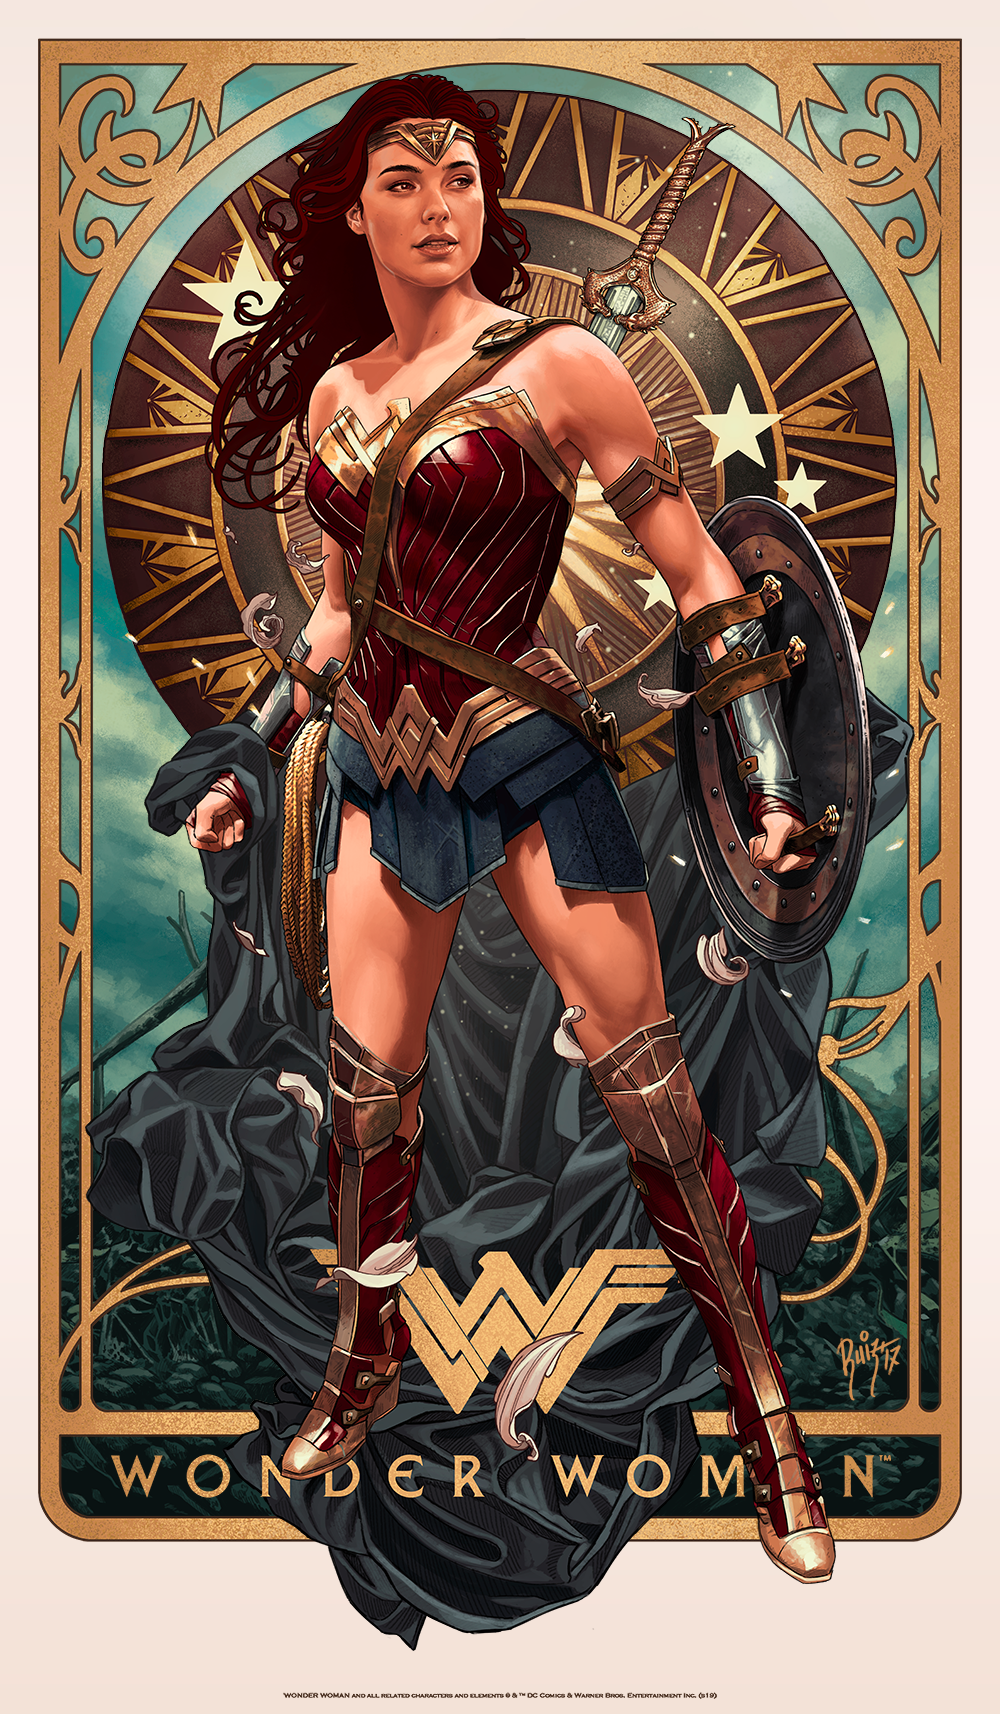 Juan Carlos Ruiz Burgos "Wonder Woman"